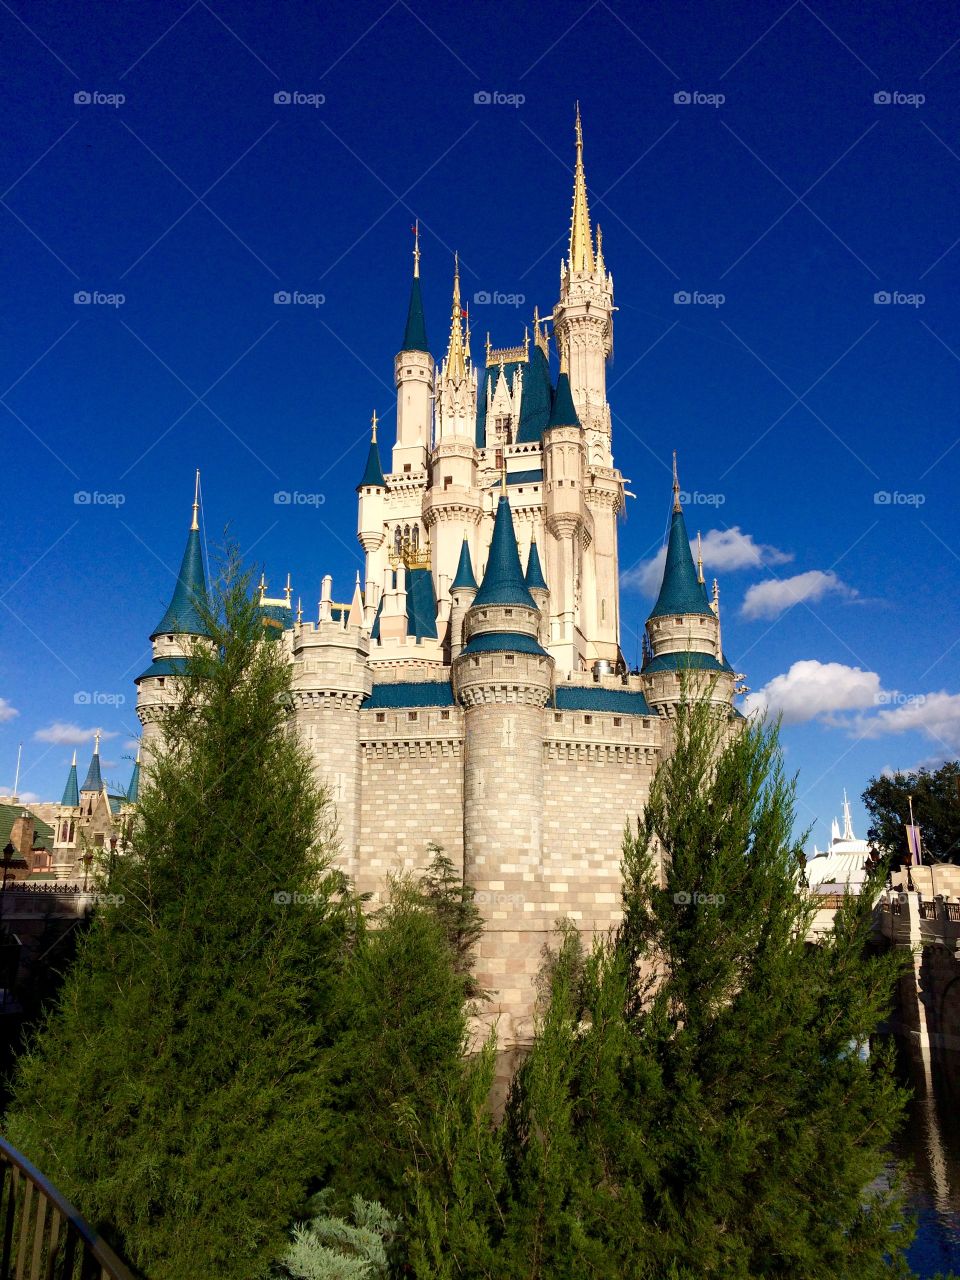 Cinderella's castle 